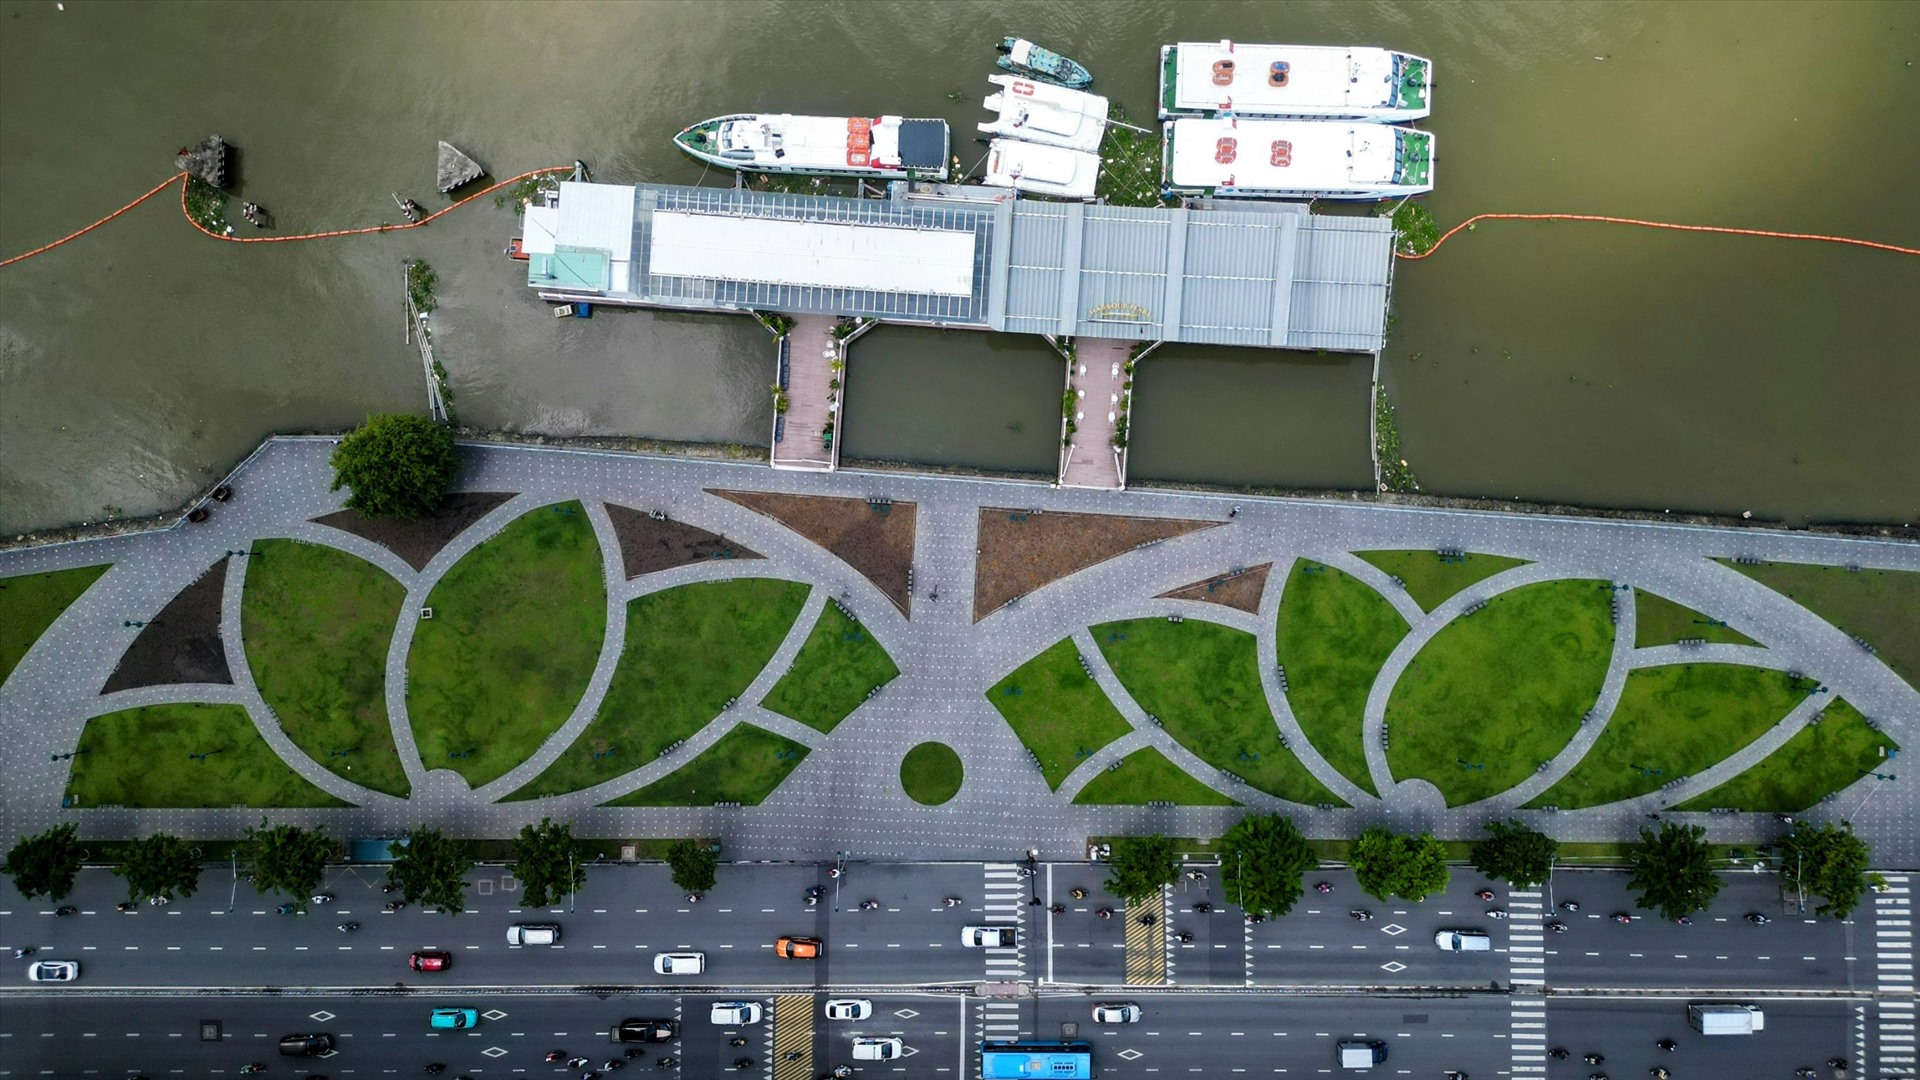 Đoạn công viên song song đường Tôn Đức Thắng rộng khoảng 5.000 m2 thông thoáng hơn sau khi di dời một số công trình và xây thêm lối đi, trồng thêm mảng xanh... Một số cây ở khu vực này được di dời để tạo không gian thoáng đãng, tầm nhìn rộng về phía sông Sài Gòn. 